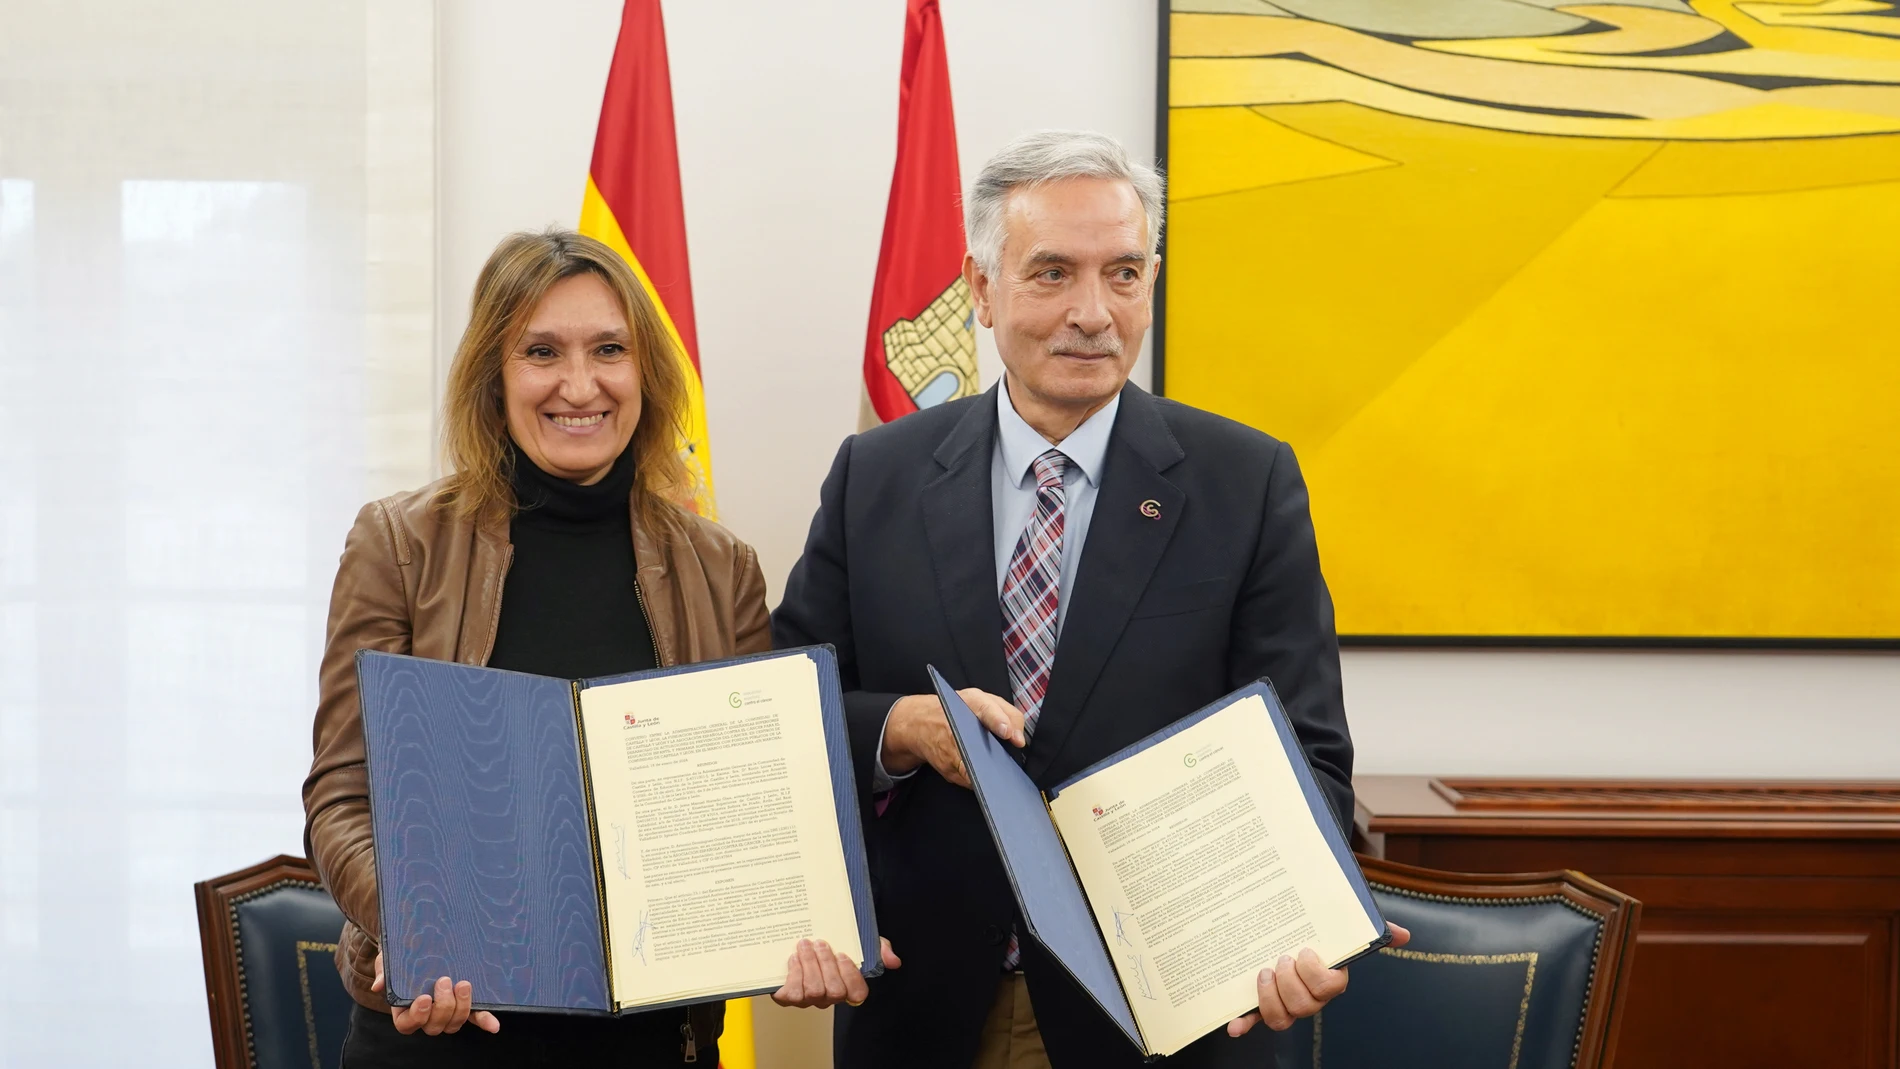 La consejera de Educación, Rocío Lucas, firma un convenio de colaboración con el presidente de la Asociación Española contra el Cáncer en Castilla y León Artemio Domínguez